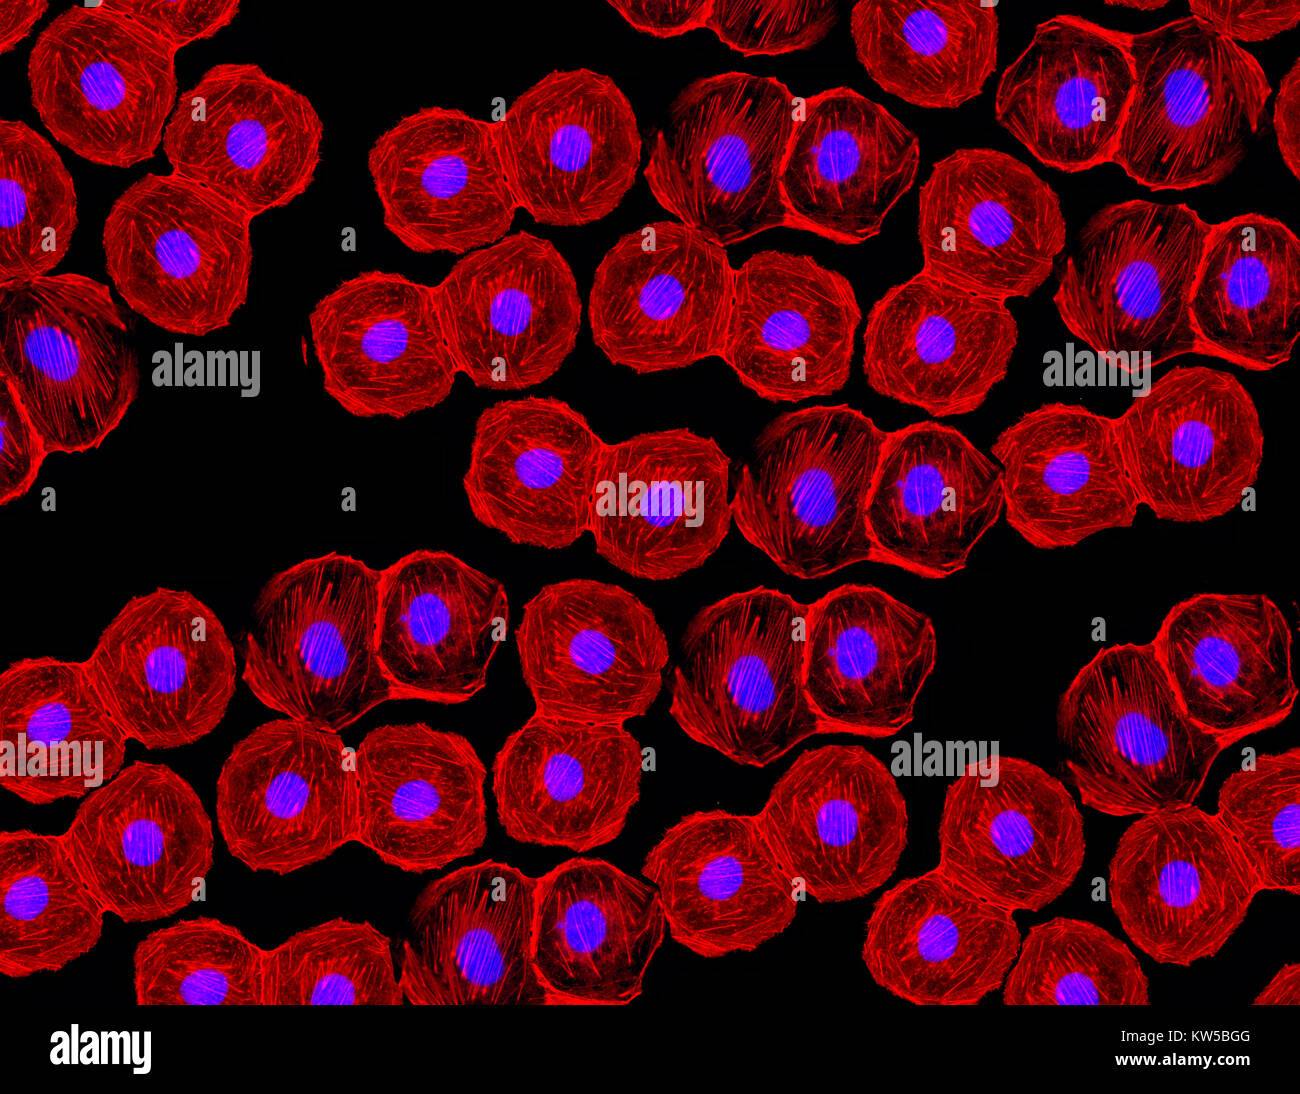 Fluoreszierendes Bild von menschlichen Stammzellen, die mit monoklonalen Antikörpermarkern unter der Mikroskopie gefärbt wurden und Zellkerne in Blau und Mikrotubuli in Rot zeigen Stockfoto